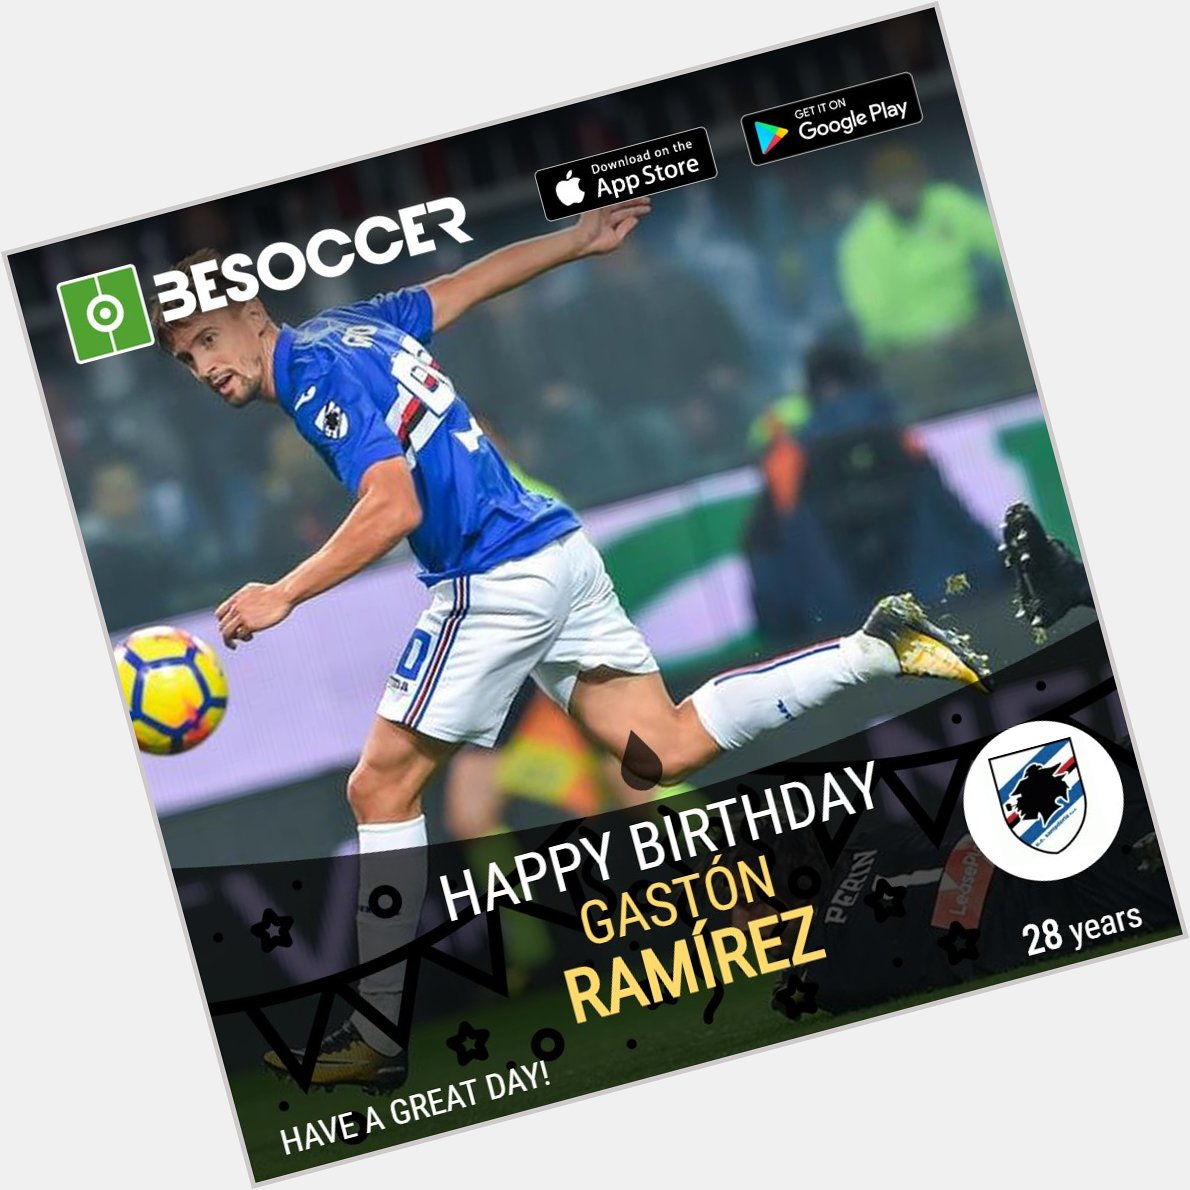 Happy birthday to Gastón Ramírez!  